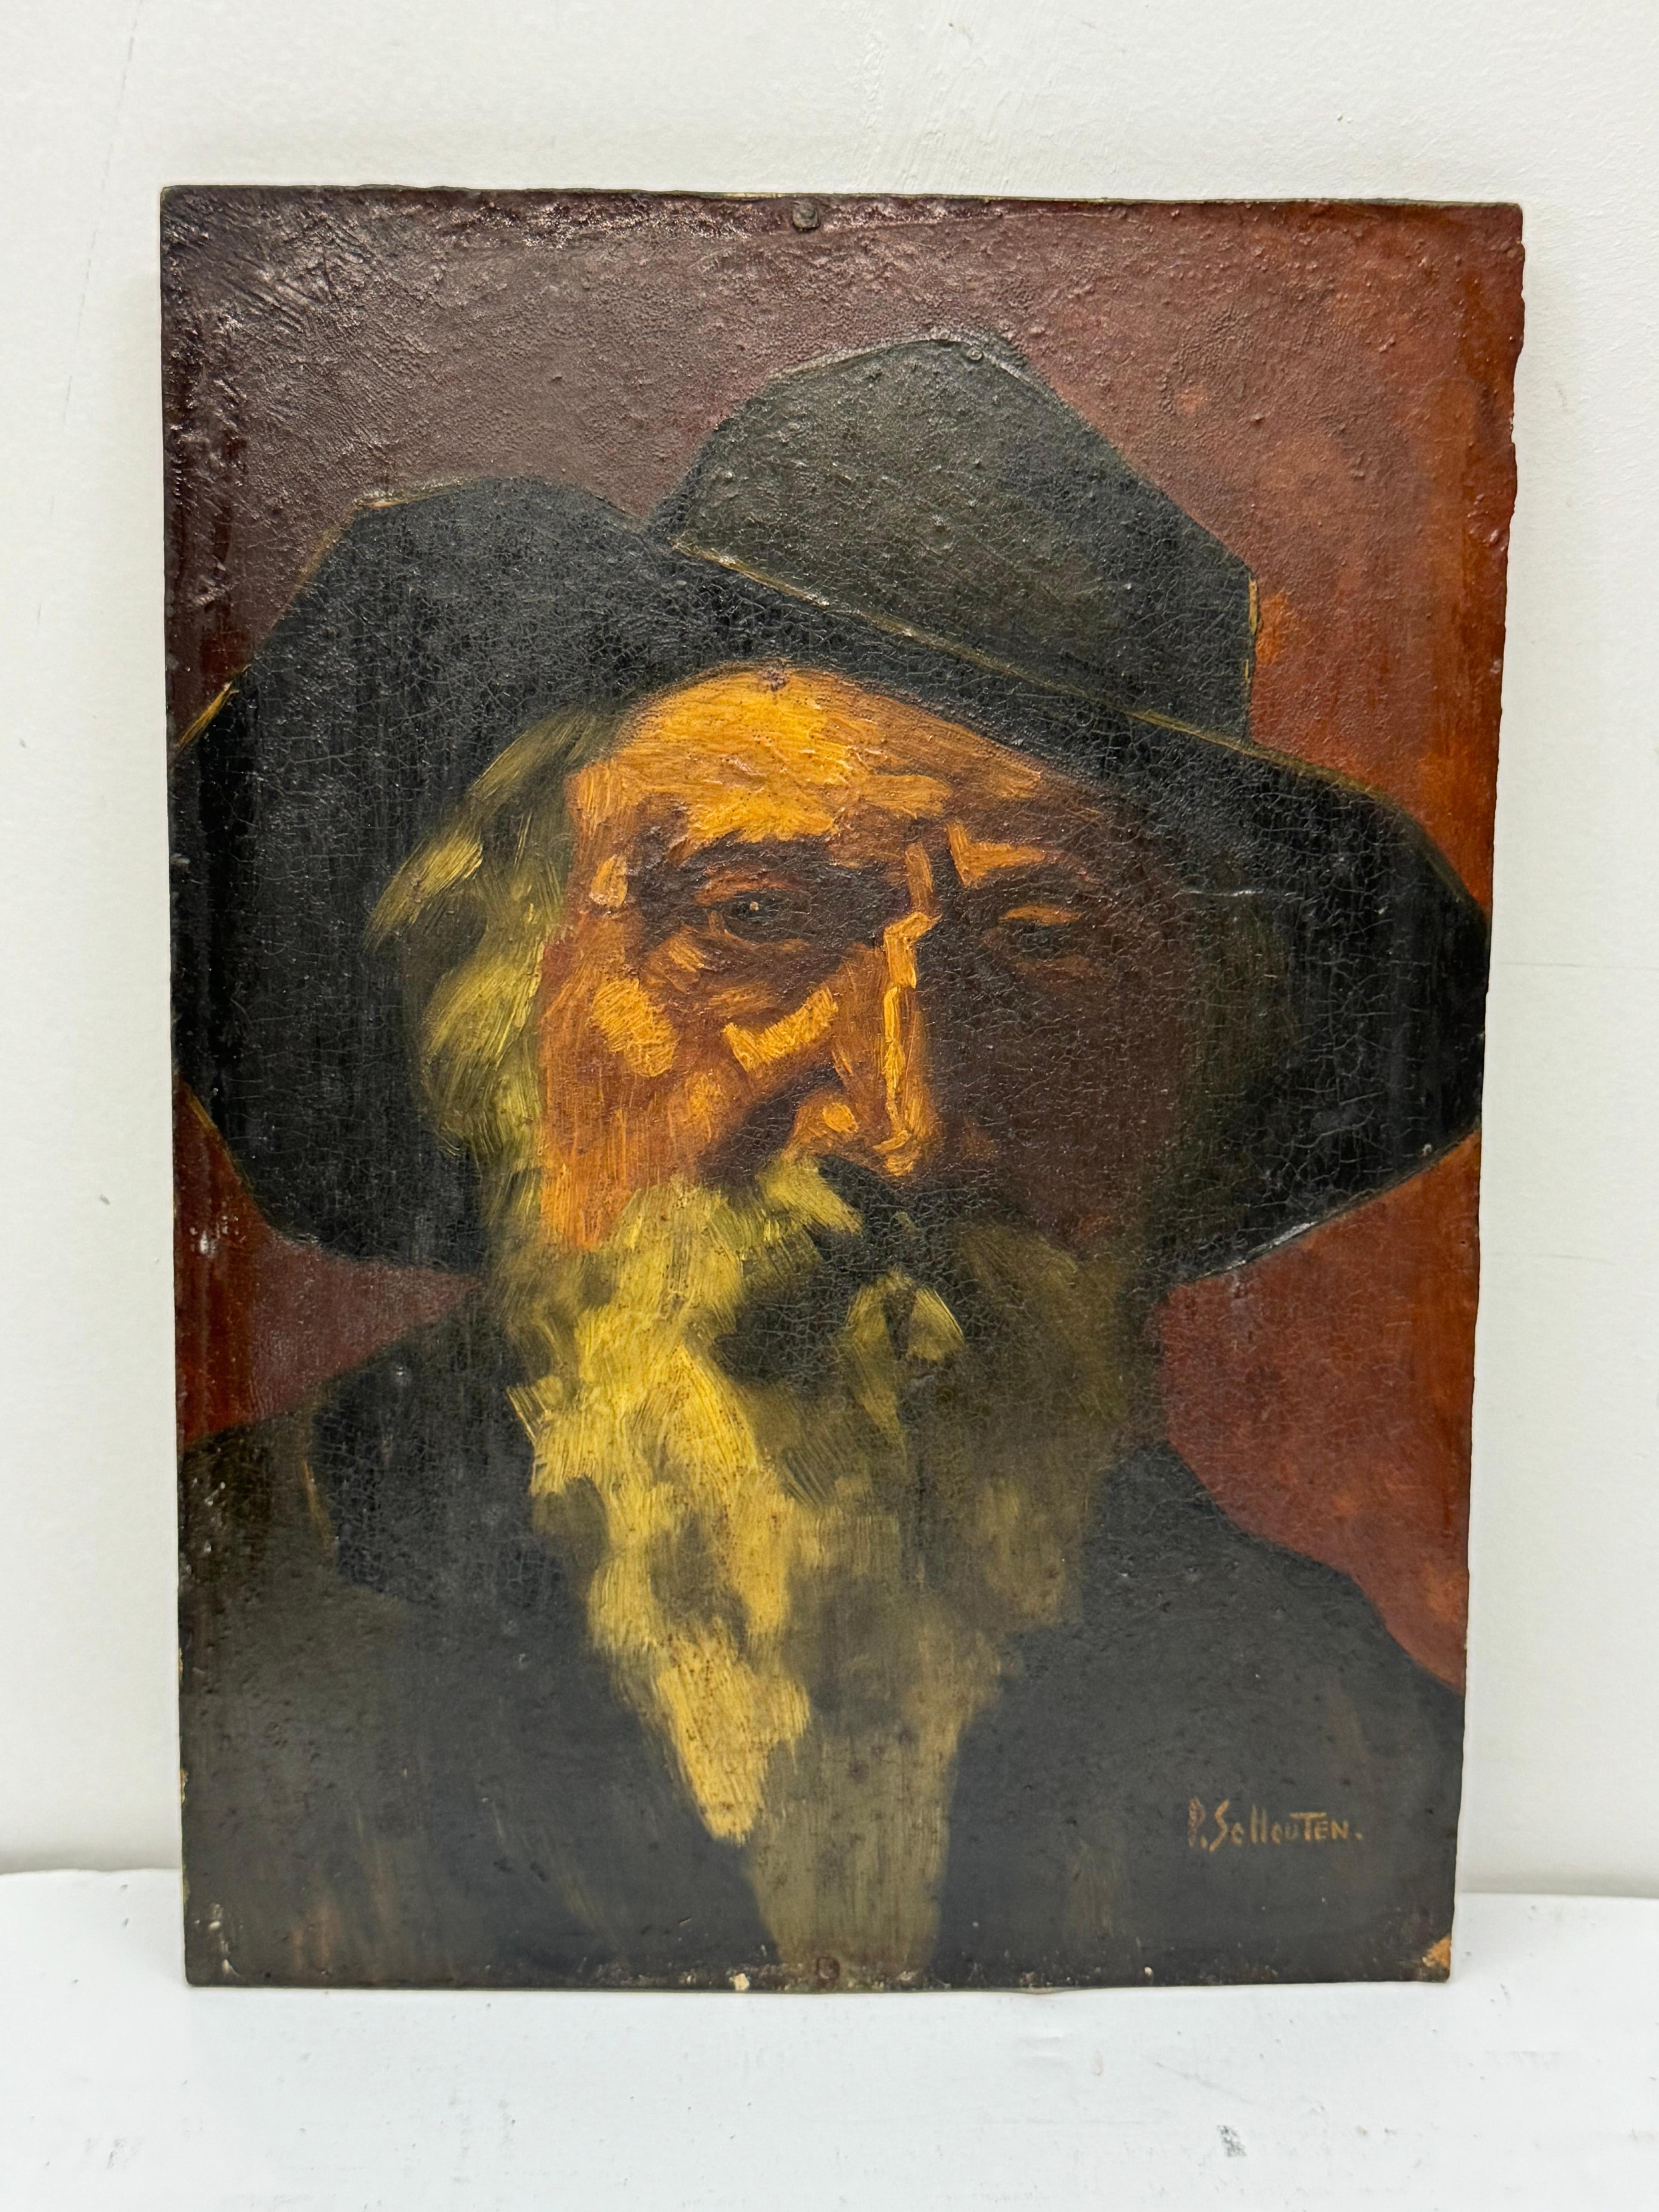 Paul Schouten (1860-1922) Portrait painting of elderly gentleman with beard

Oil on board 

9 x 12 unframed 